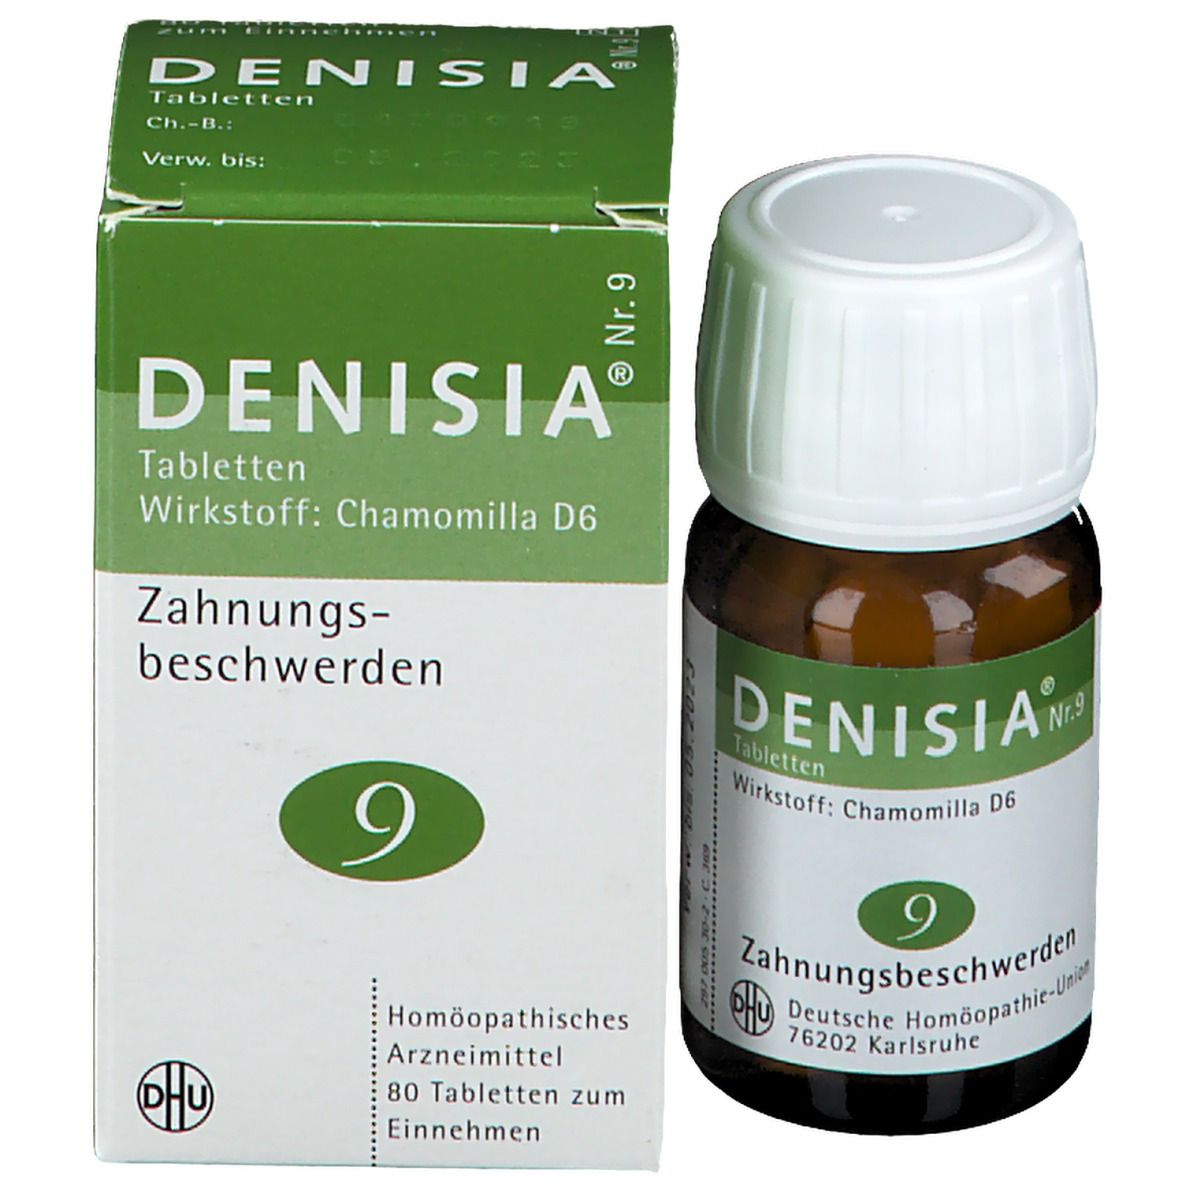 Denisia® Nr. 9 Zahnungsbeschwerden